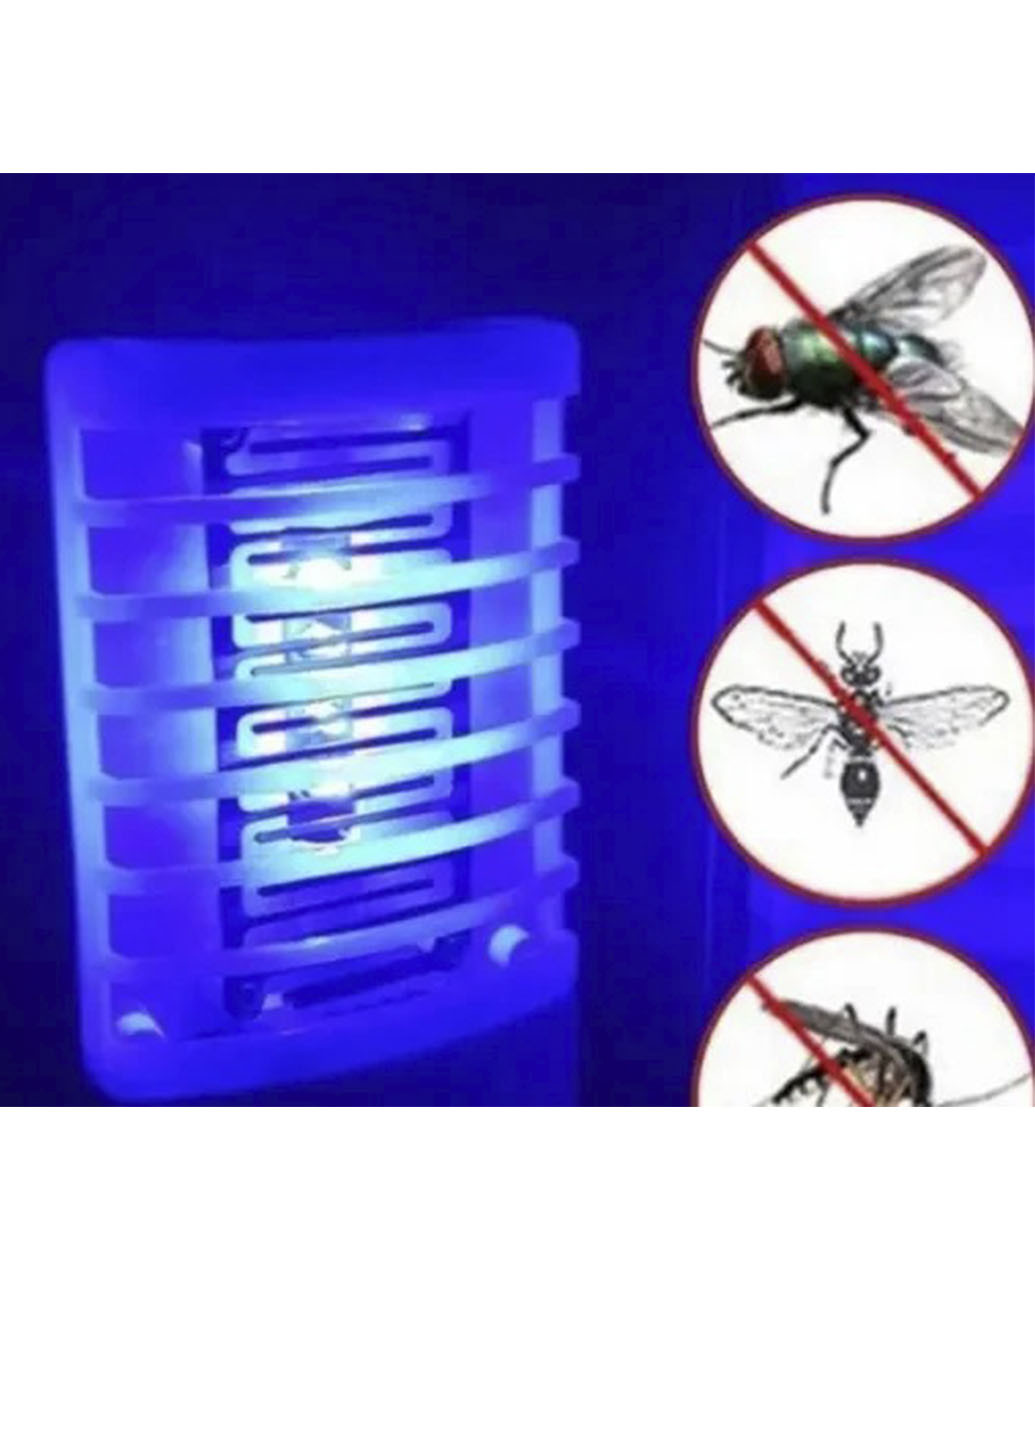 Пастка для комарів TV10016 електро пастка для комах лампа від XO (253033459)